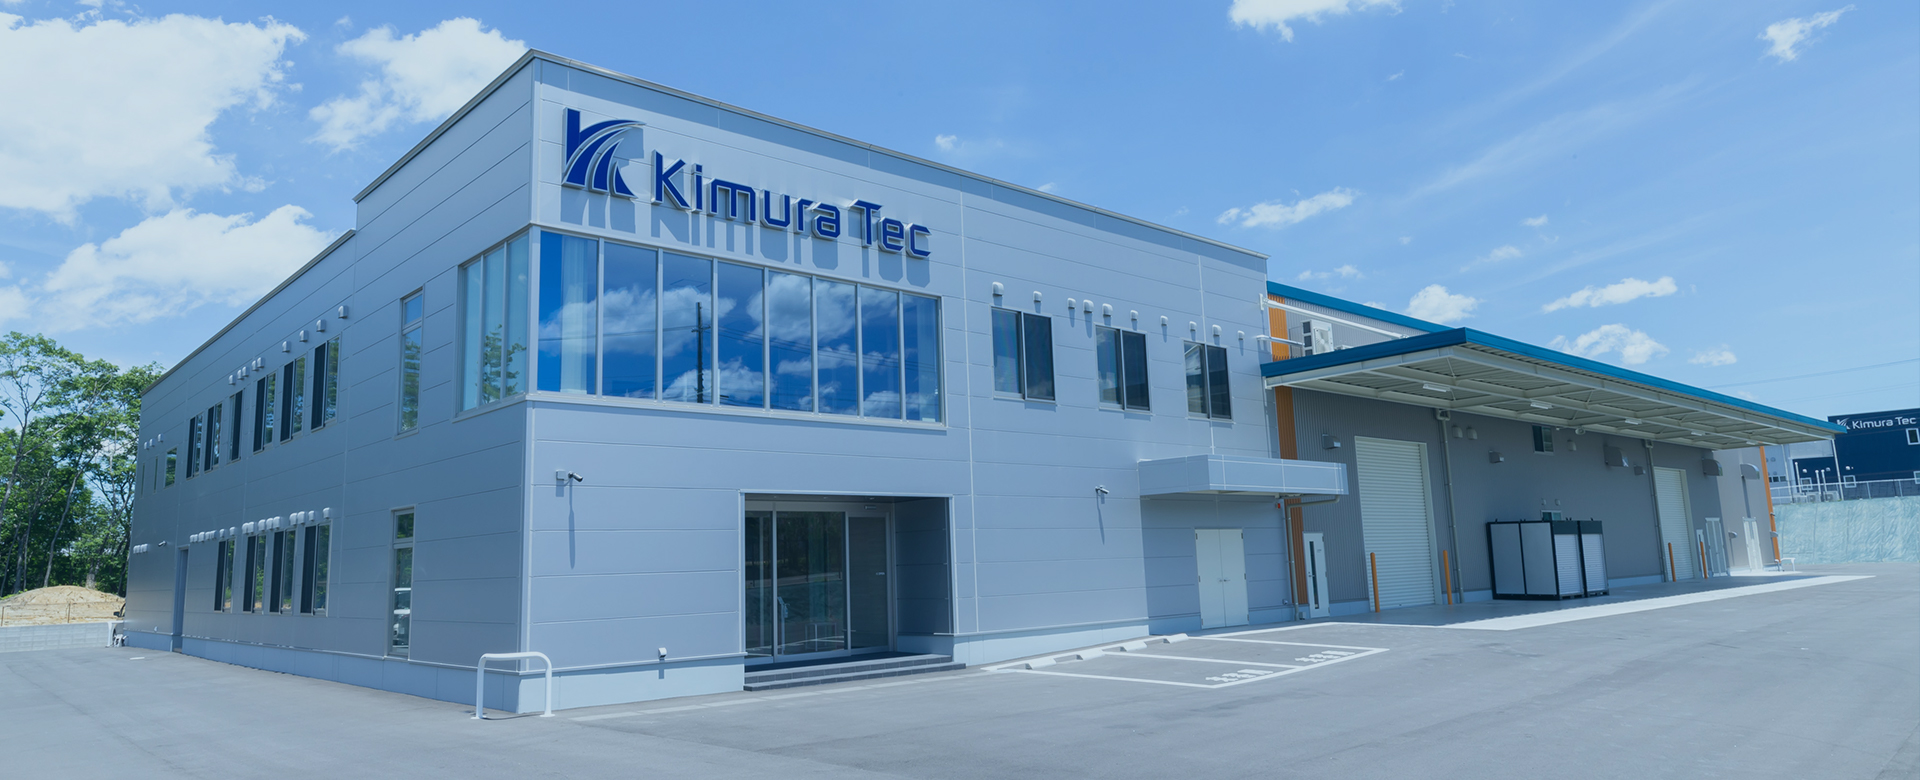 Kimura Tec Inc.